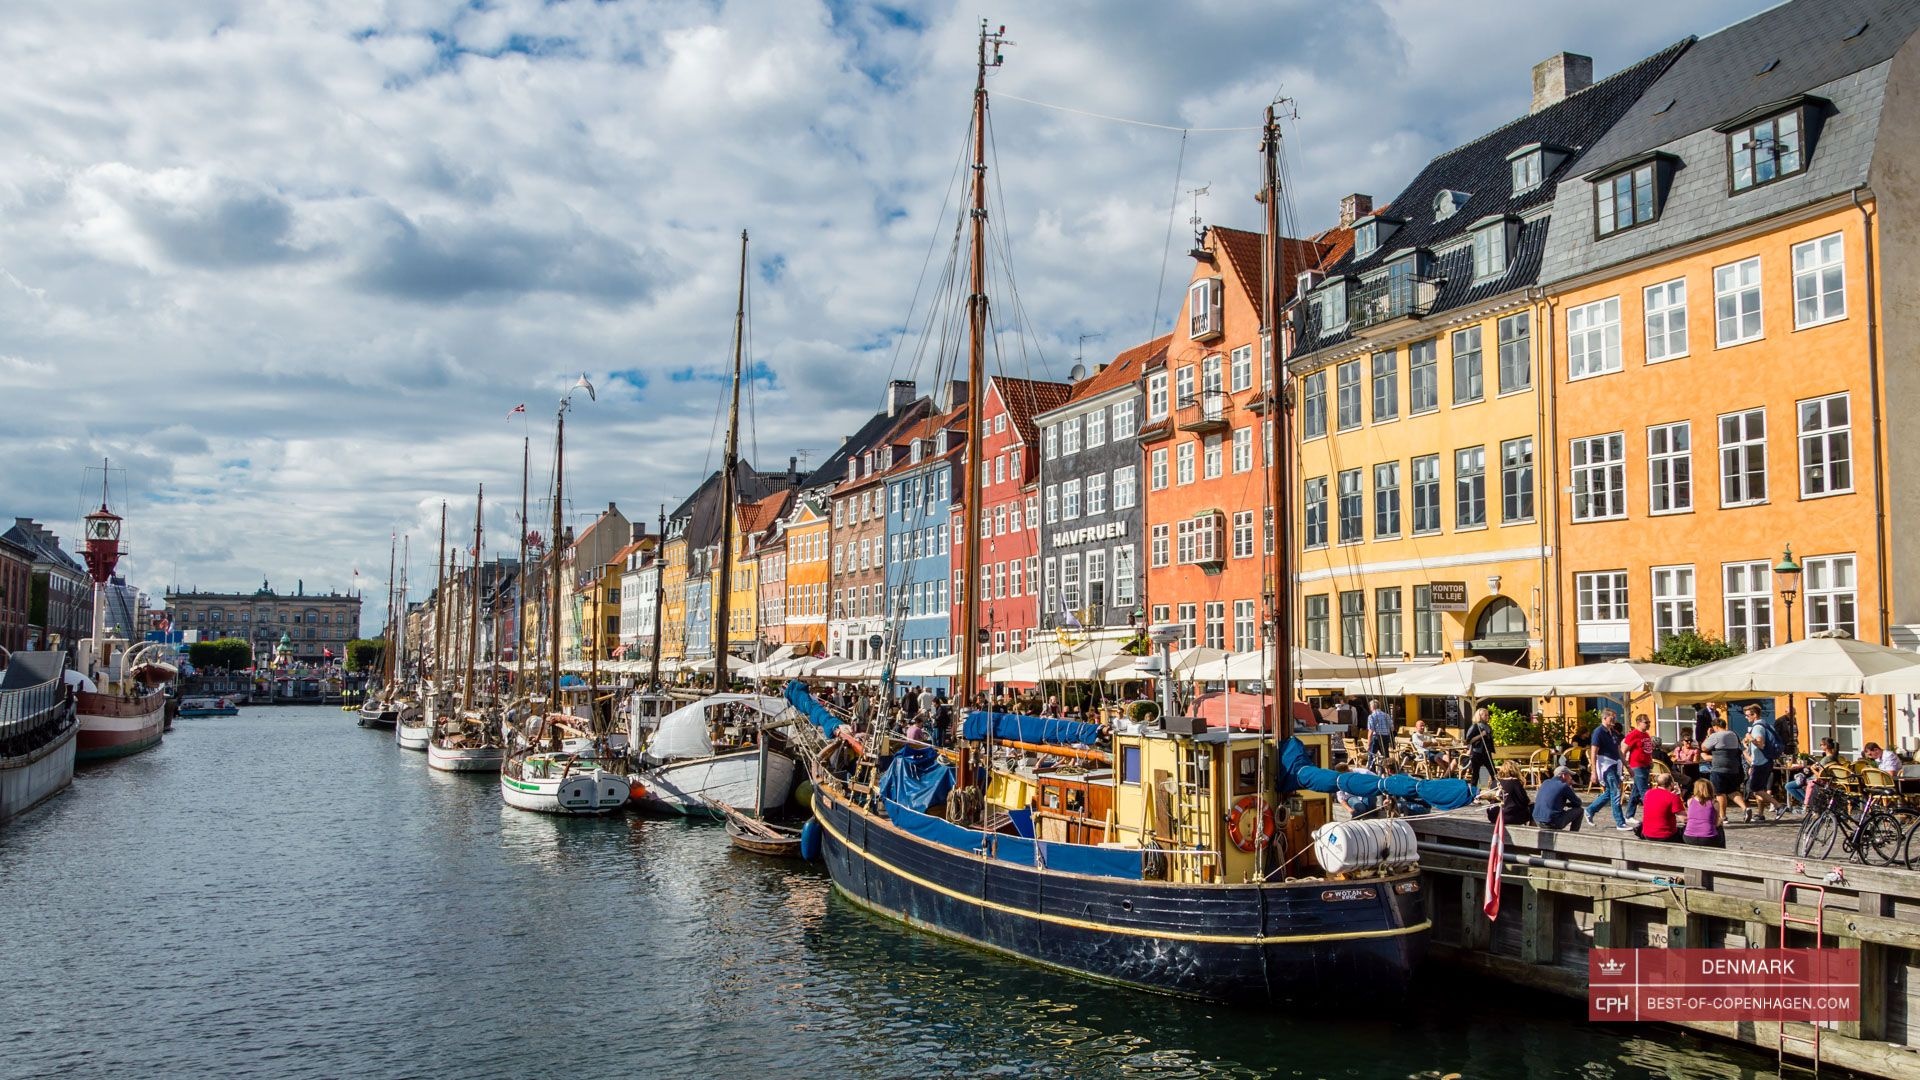 Nyhavn's colorful charm, Guided tour options, Kopenhagen highlights, Danish landmarks, 1920x1080 Full HD Desktop